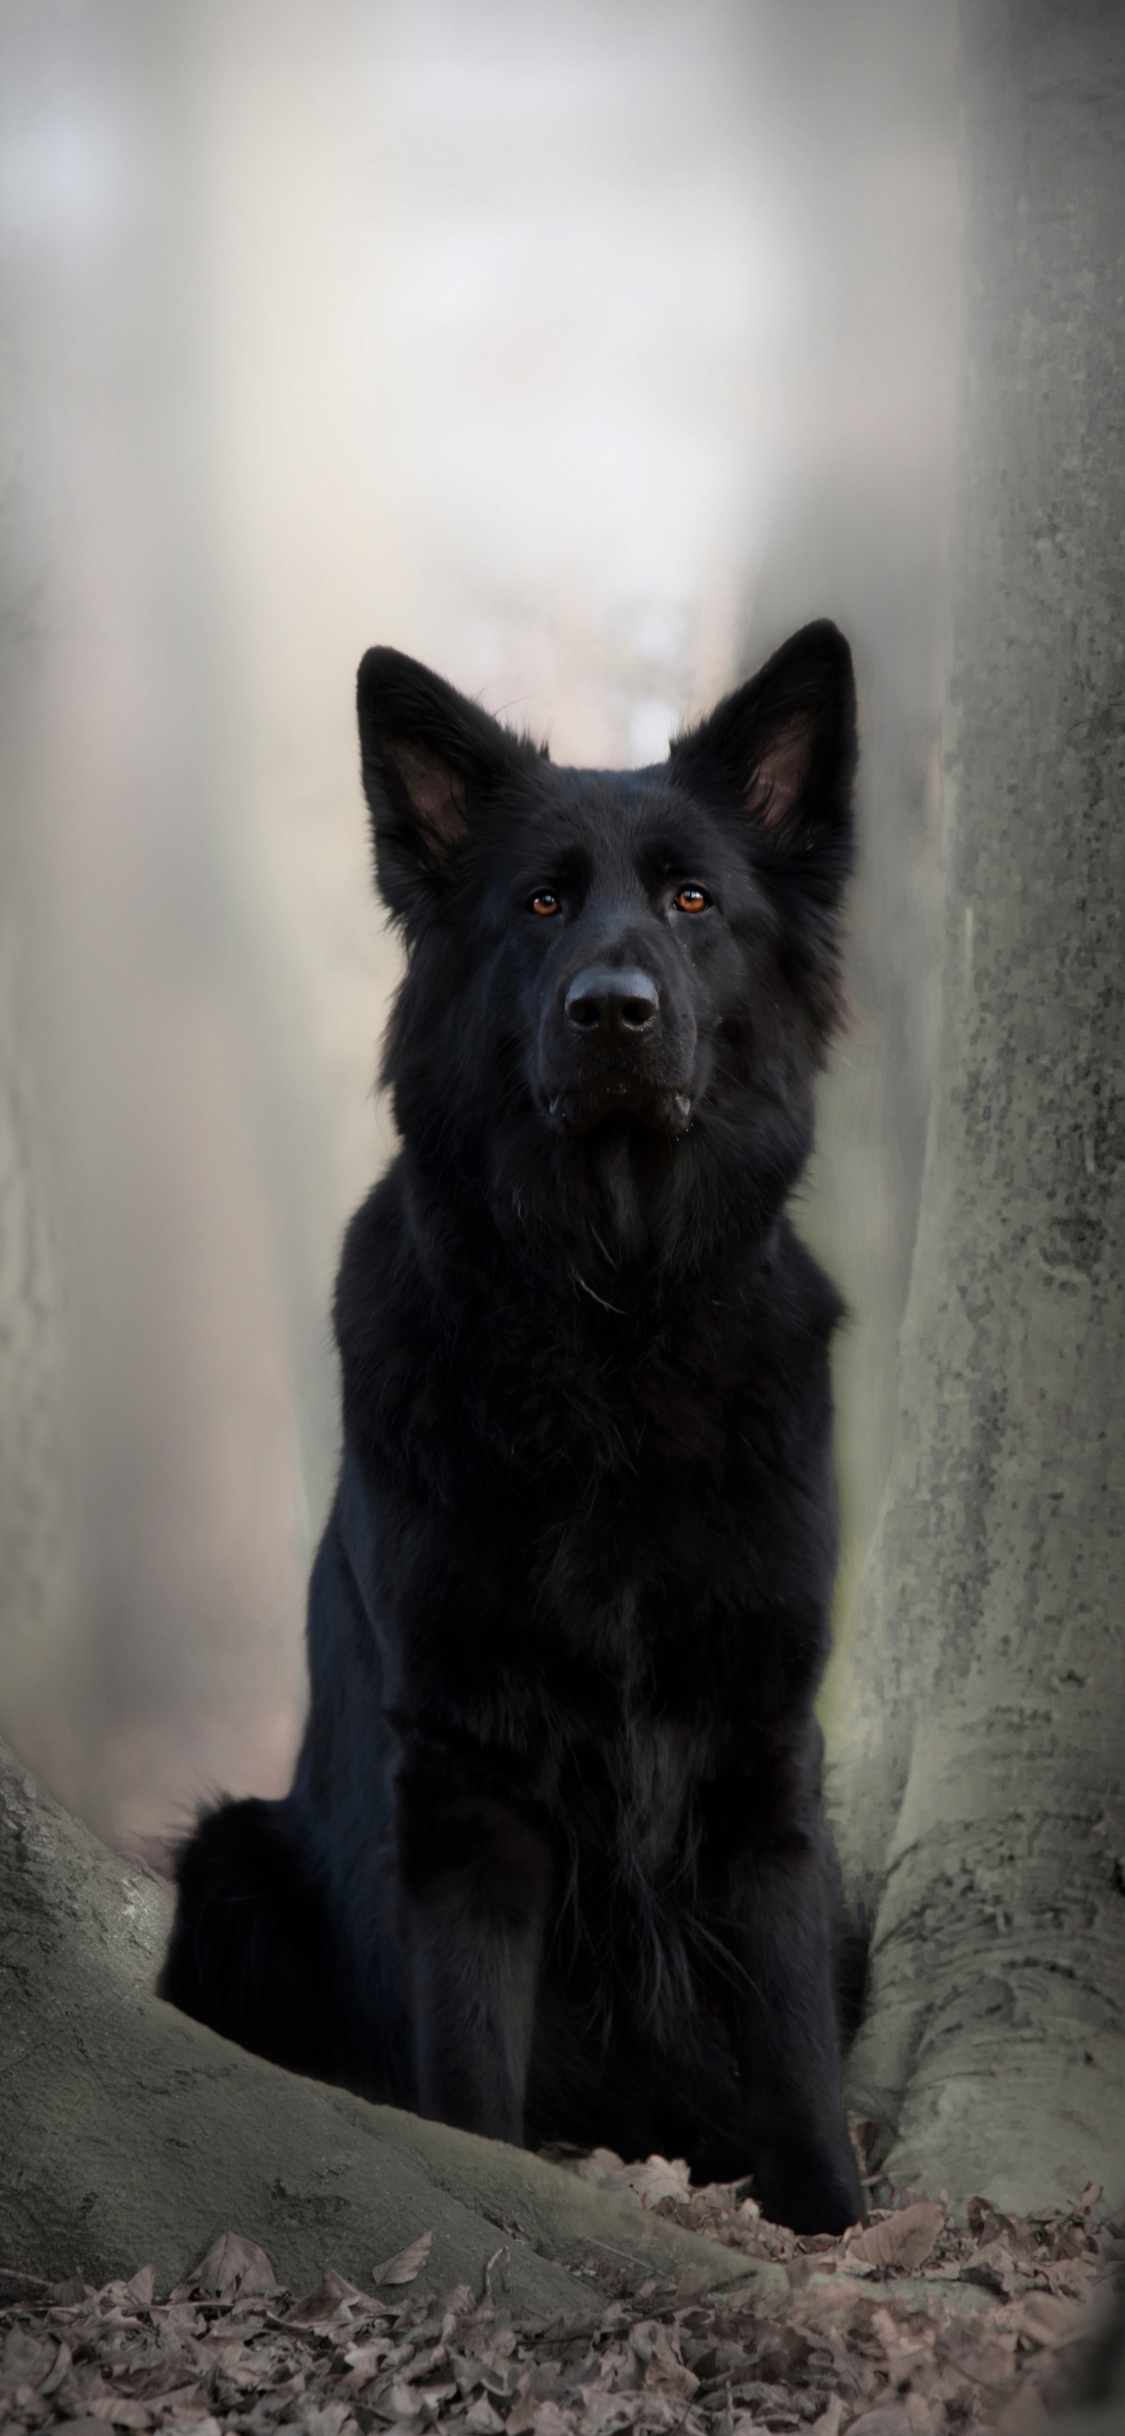 Download wallpaper 1125x2436 black dog, german shepherd, animal, outdoor,  iphone x, 1125x2436 hd background, 3122